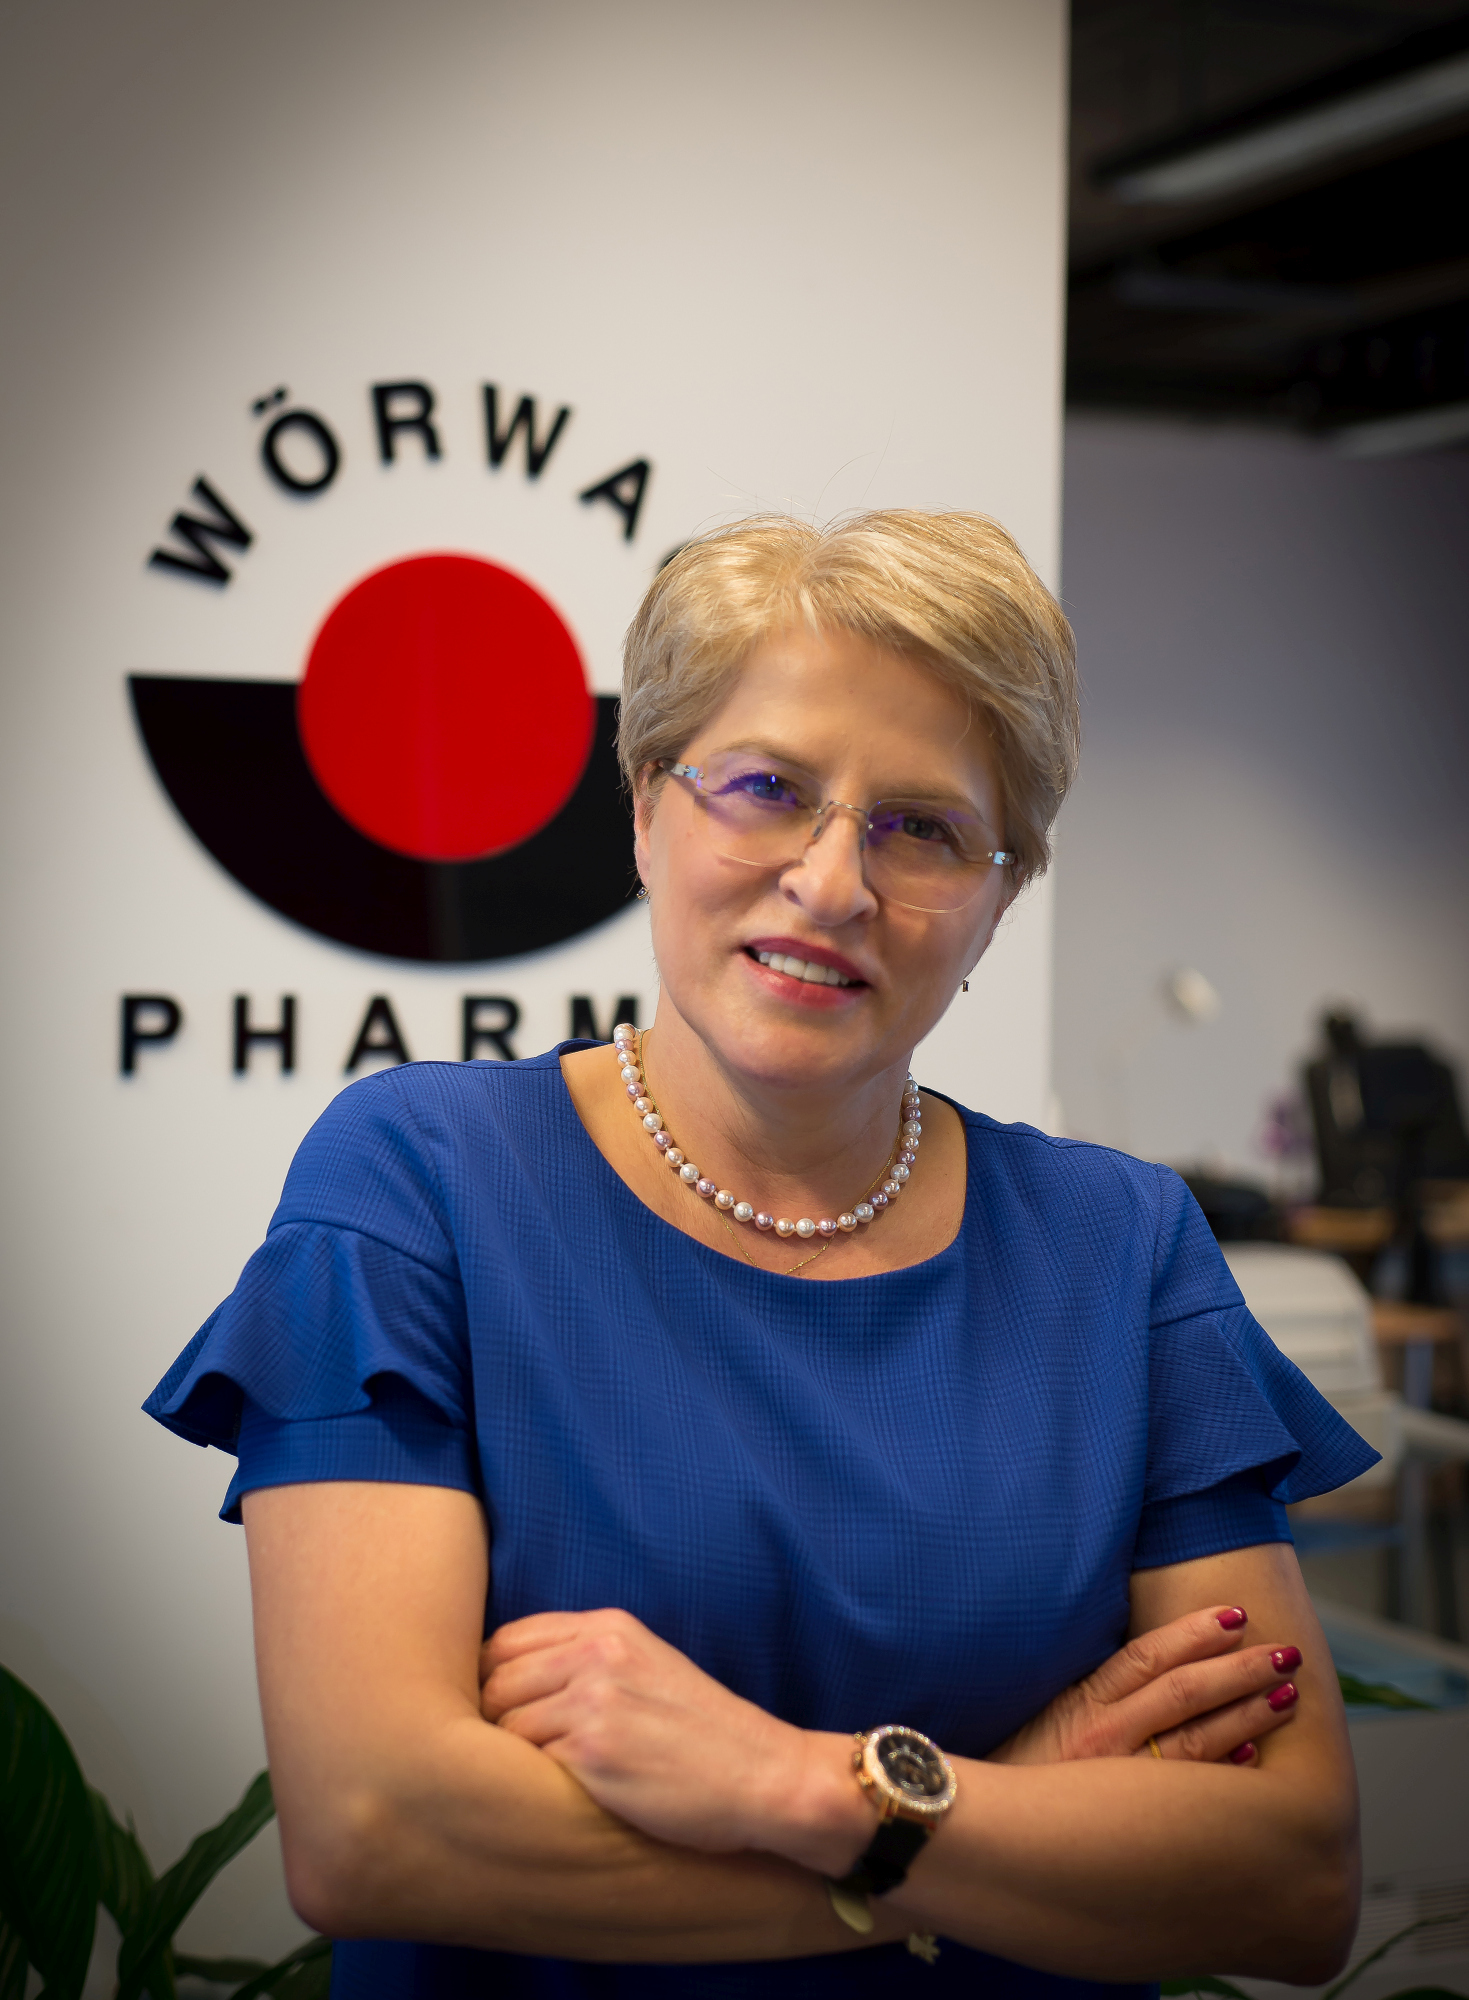 (P) Succesul Wörwag Pharma: de la farmacie la companie farmaceutică internațională